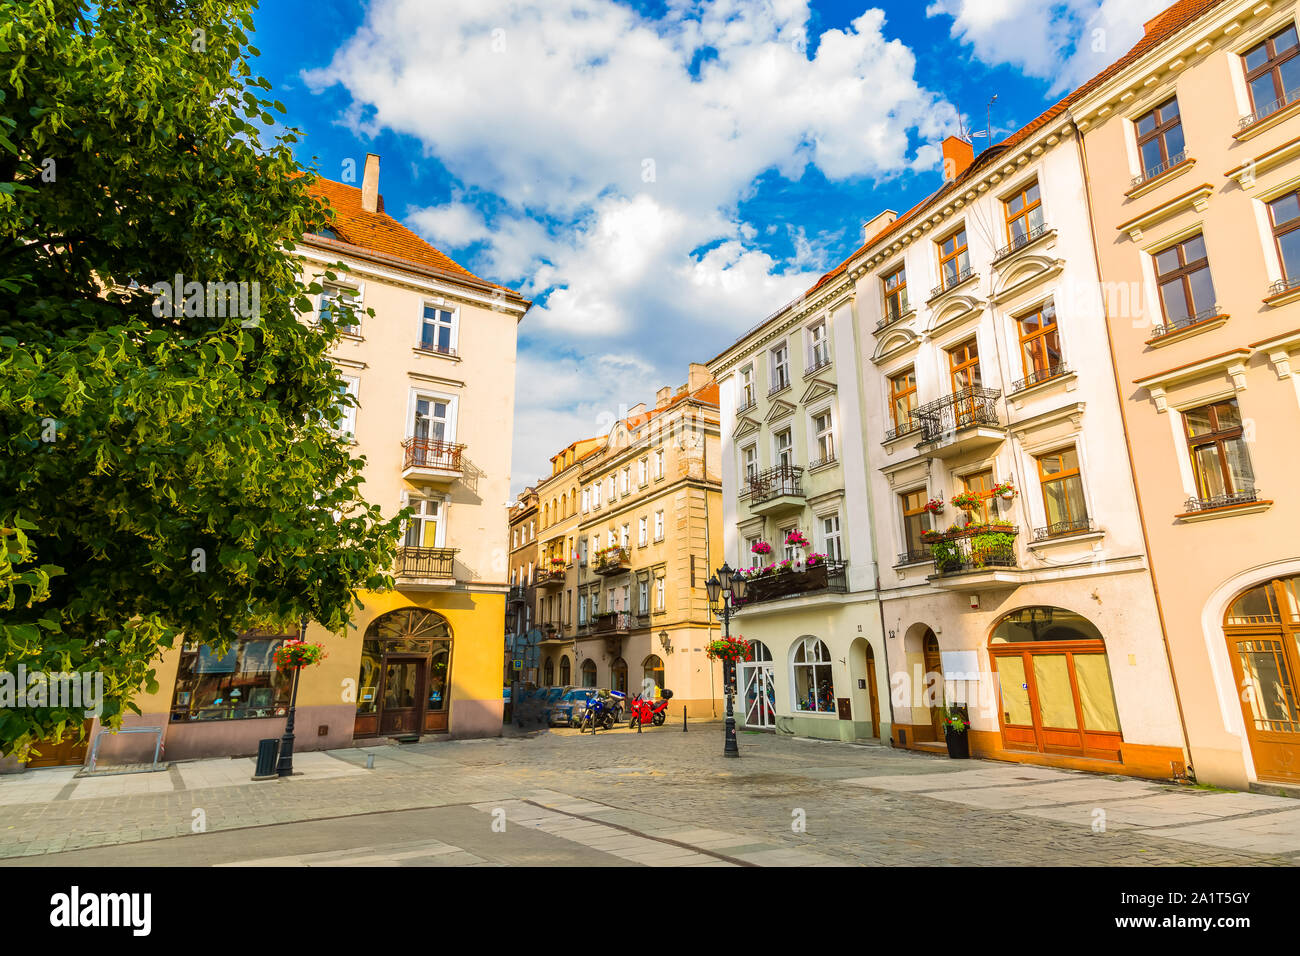 Rue de la vieille ville dans la ville de Kalisz, Pologne Banque D'Images